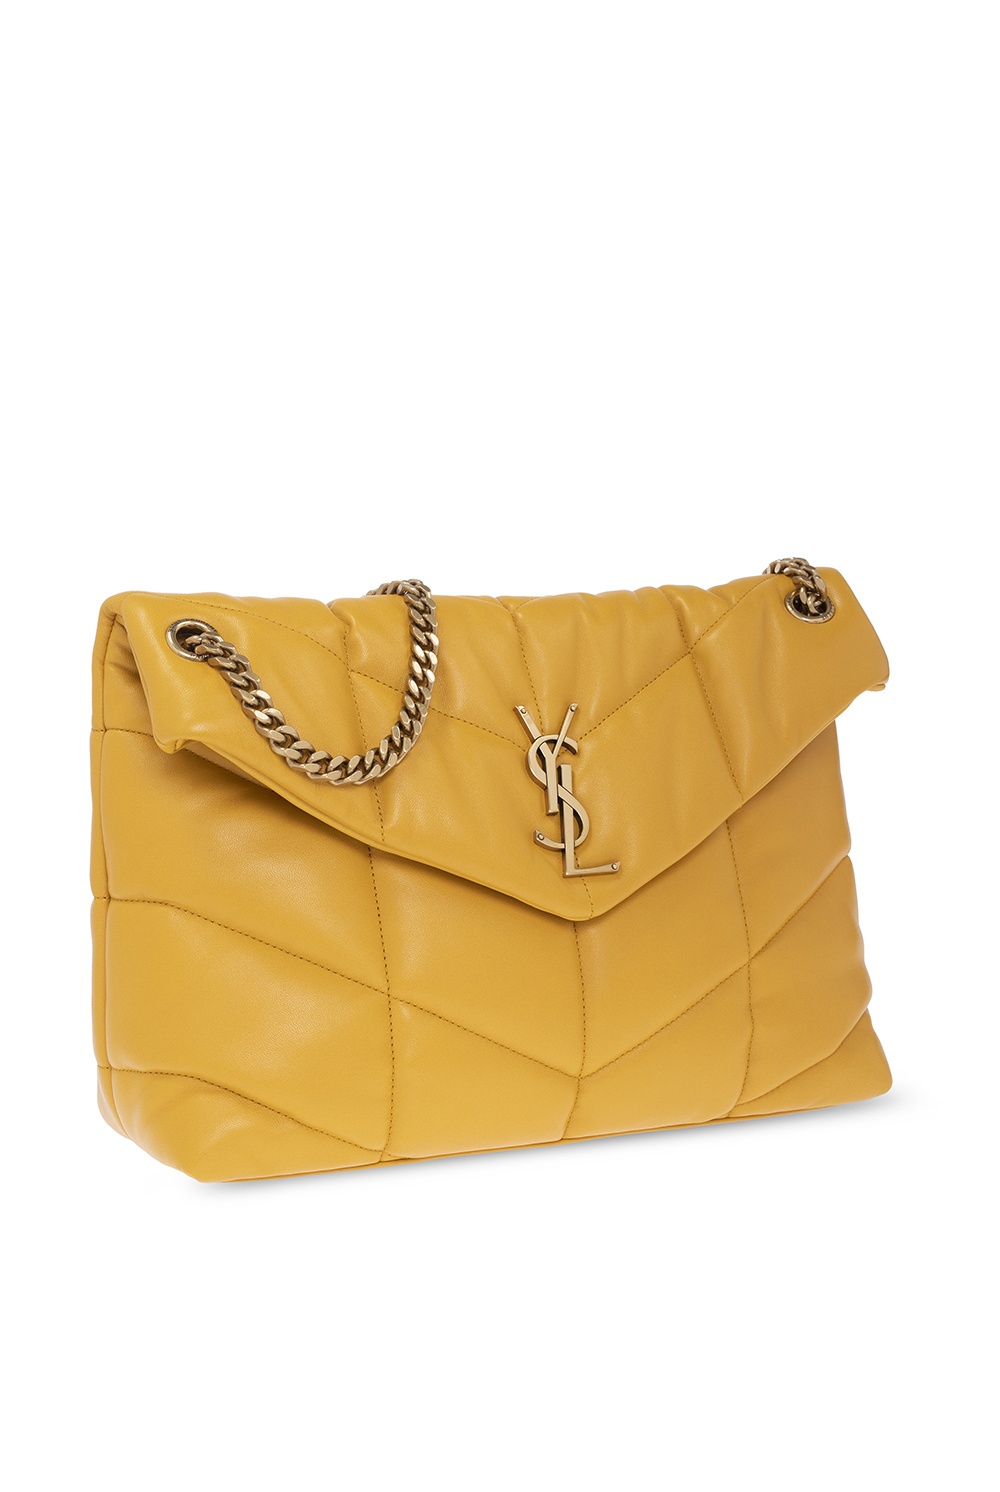 Louis Vuitton Marceau Bag - Vitkac shop online